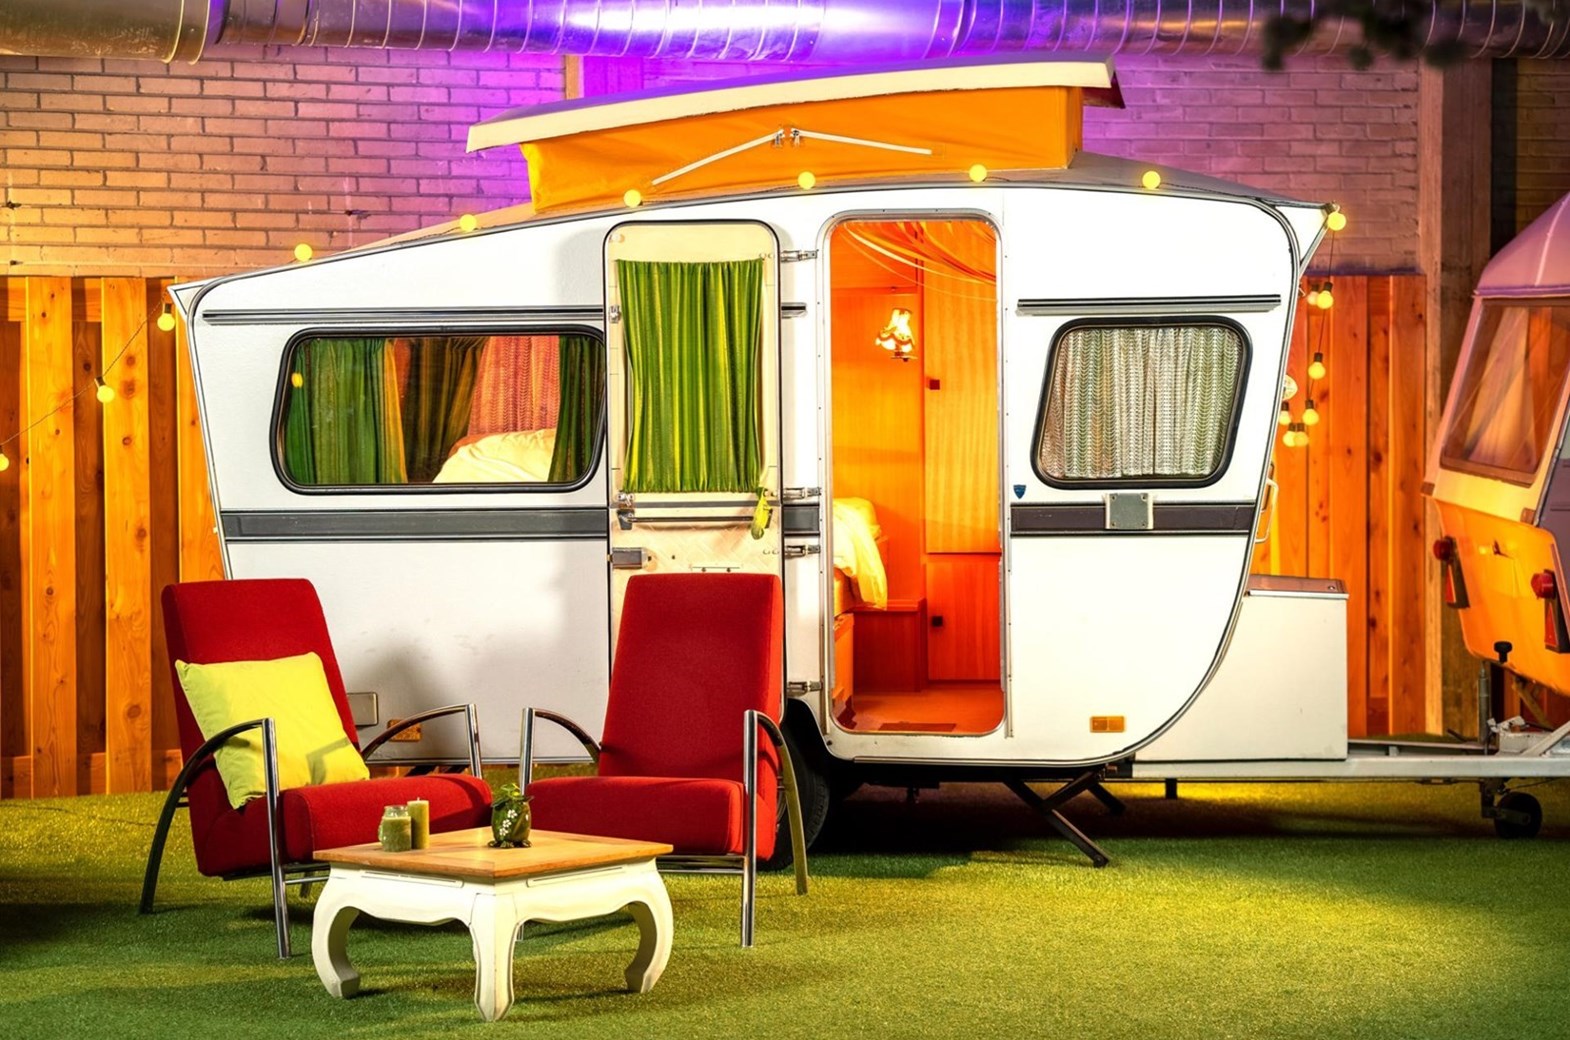 onvergeeflijk Oom of meneer wandelen Classic caravan op een indoor camping - OrigineelOvernachten